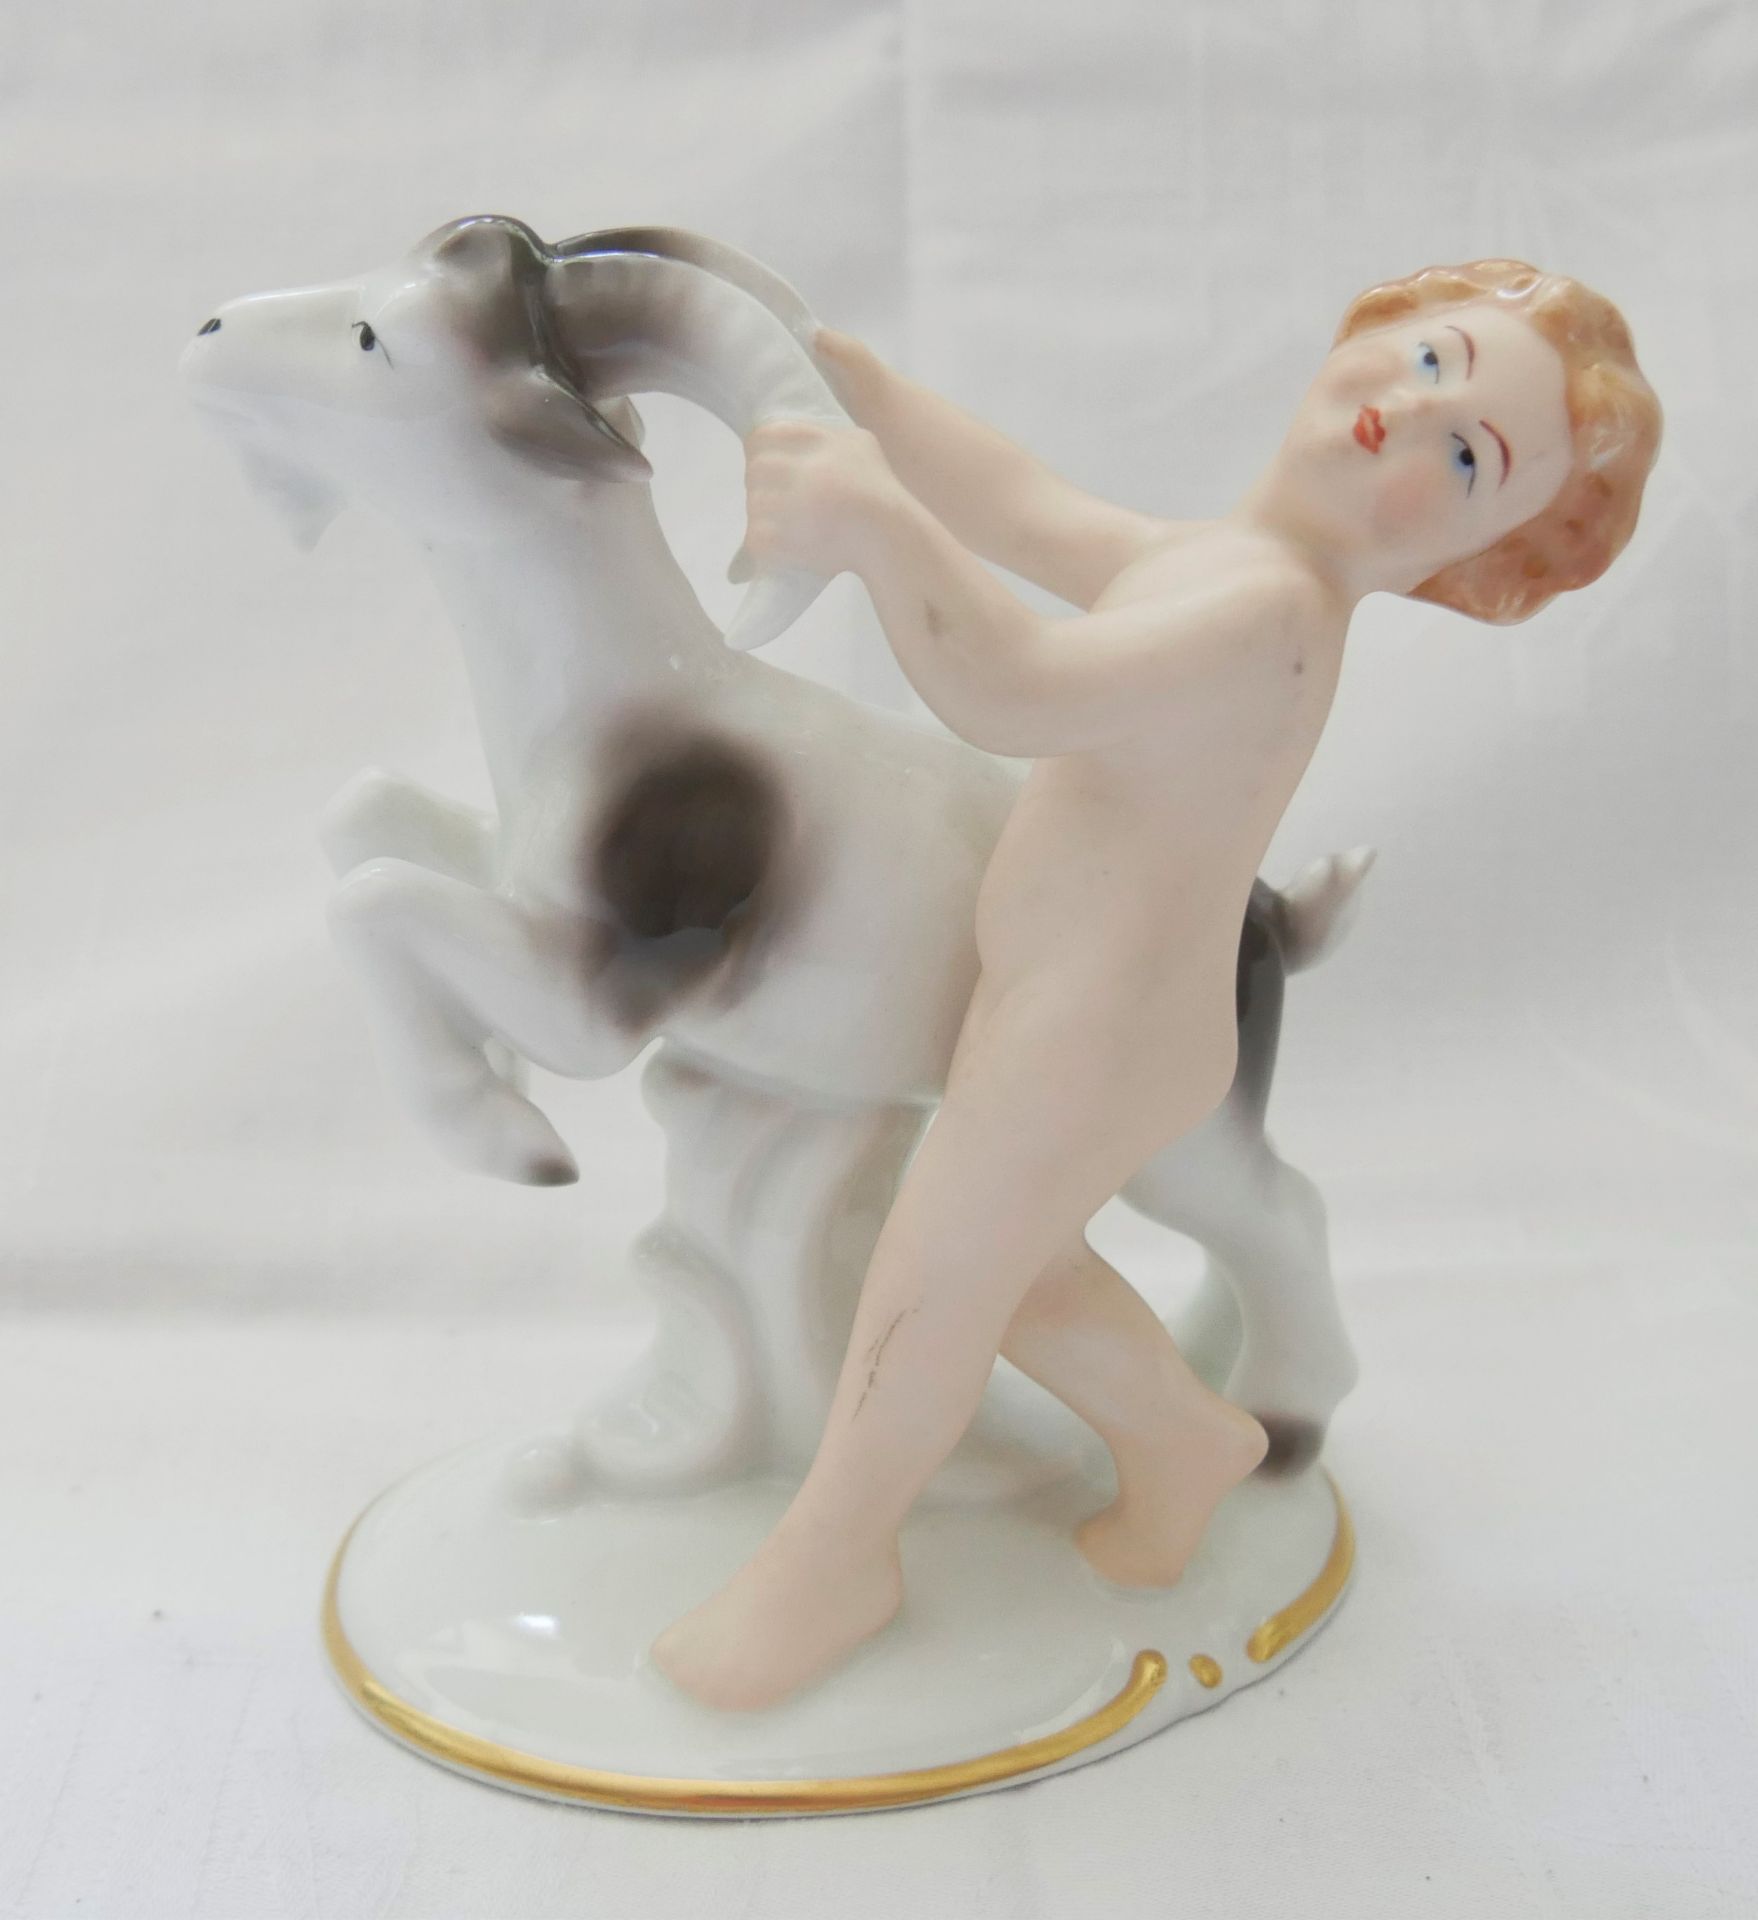 Gerold Porzellan-Figur "Putto mit Ziege", am Boden gemarkt. Höhe ca. 14,5 cm